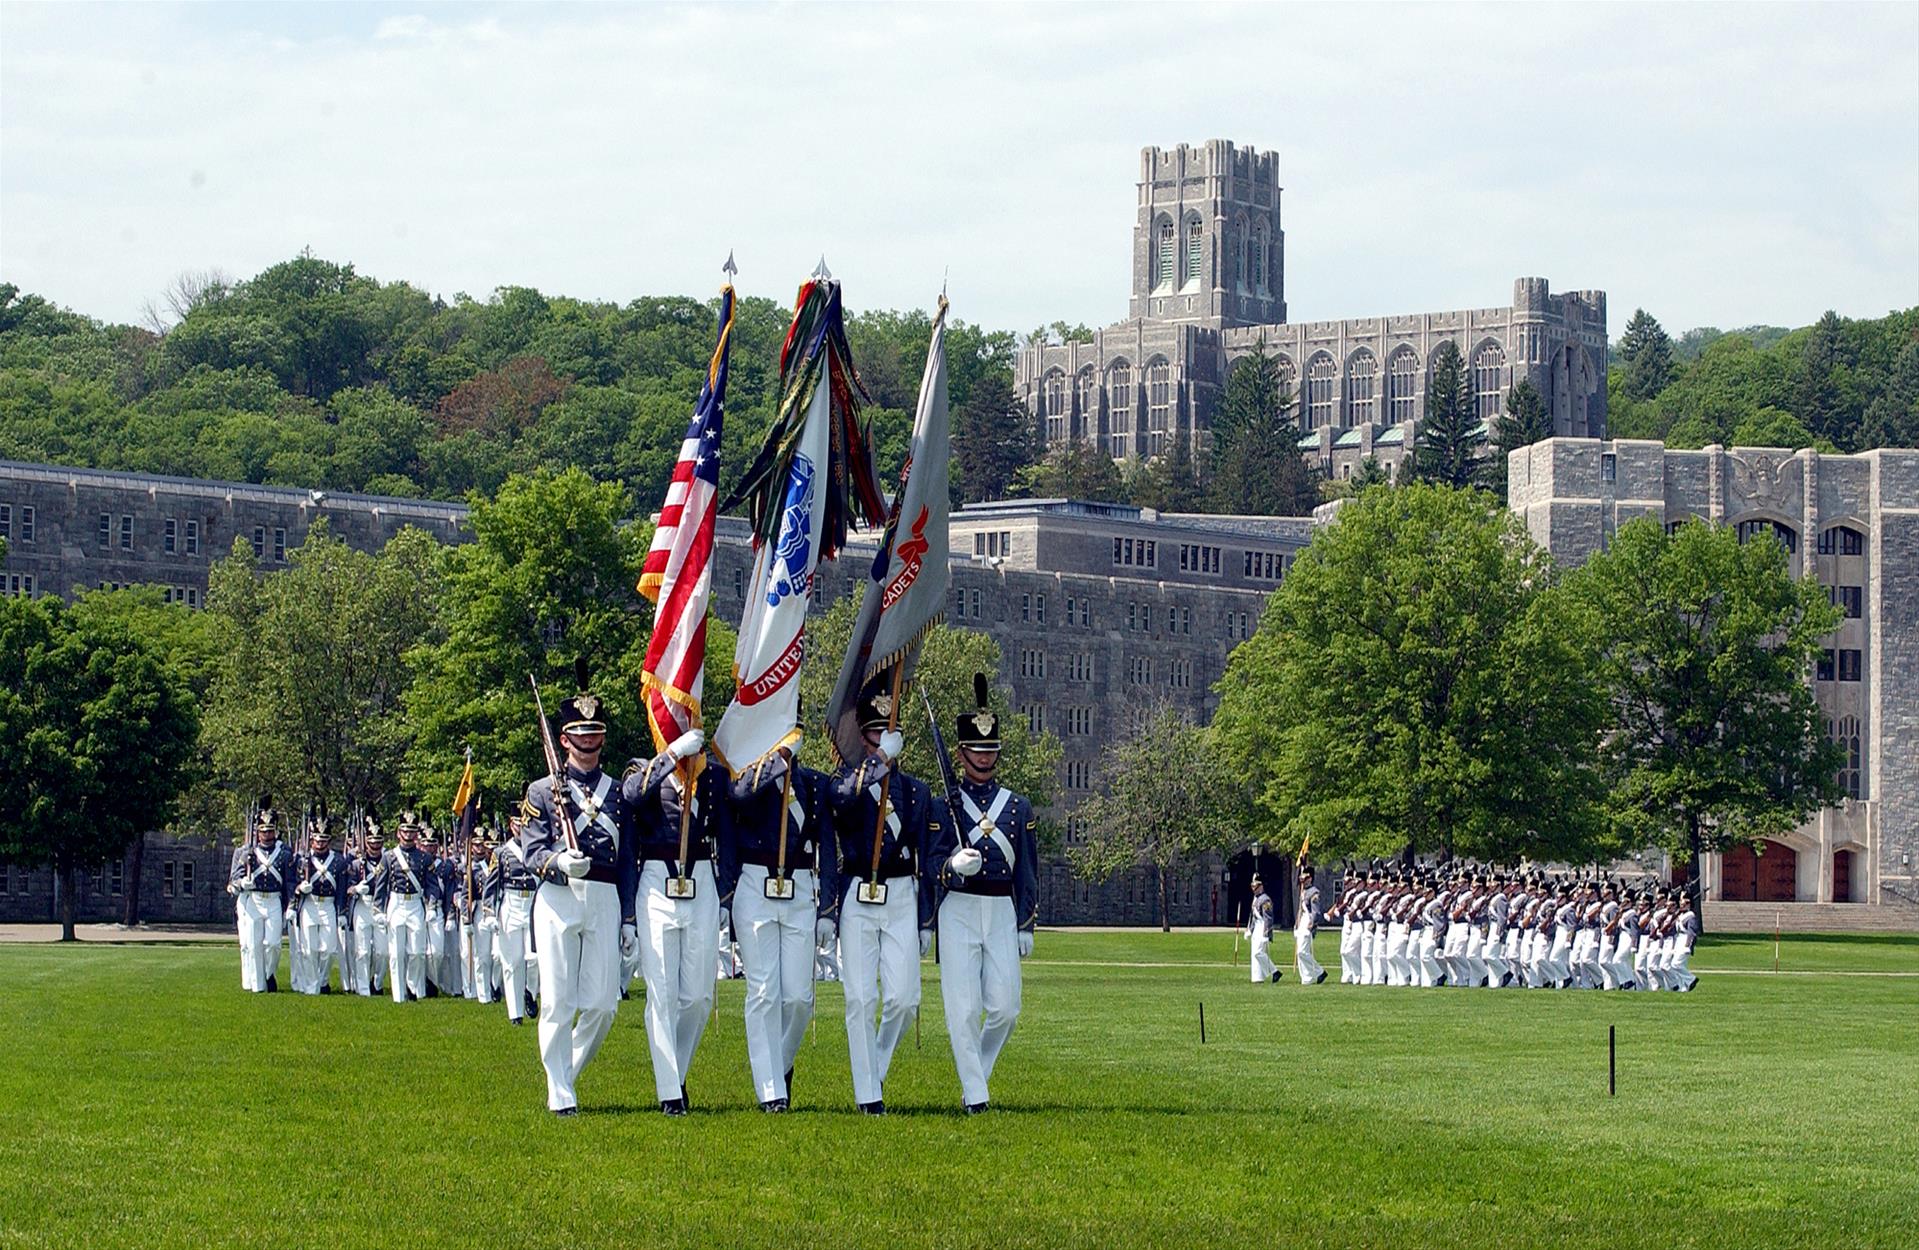 接触,身临其境感受顶尖名校的风采   西点军校是美国第一所军事学校